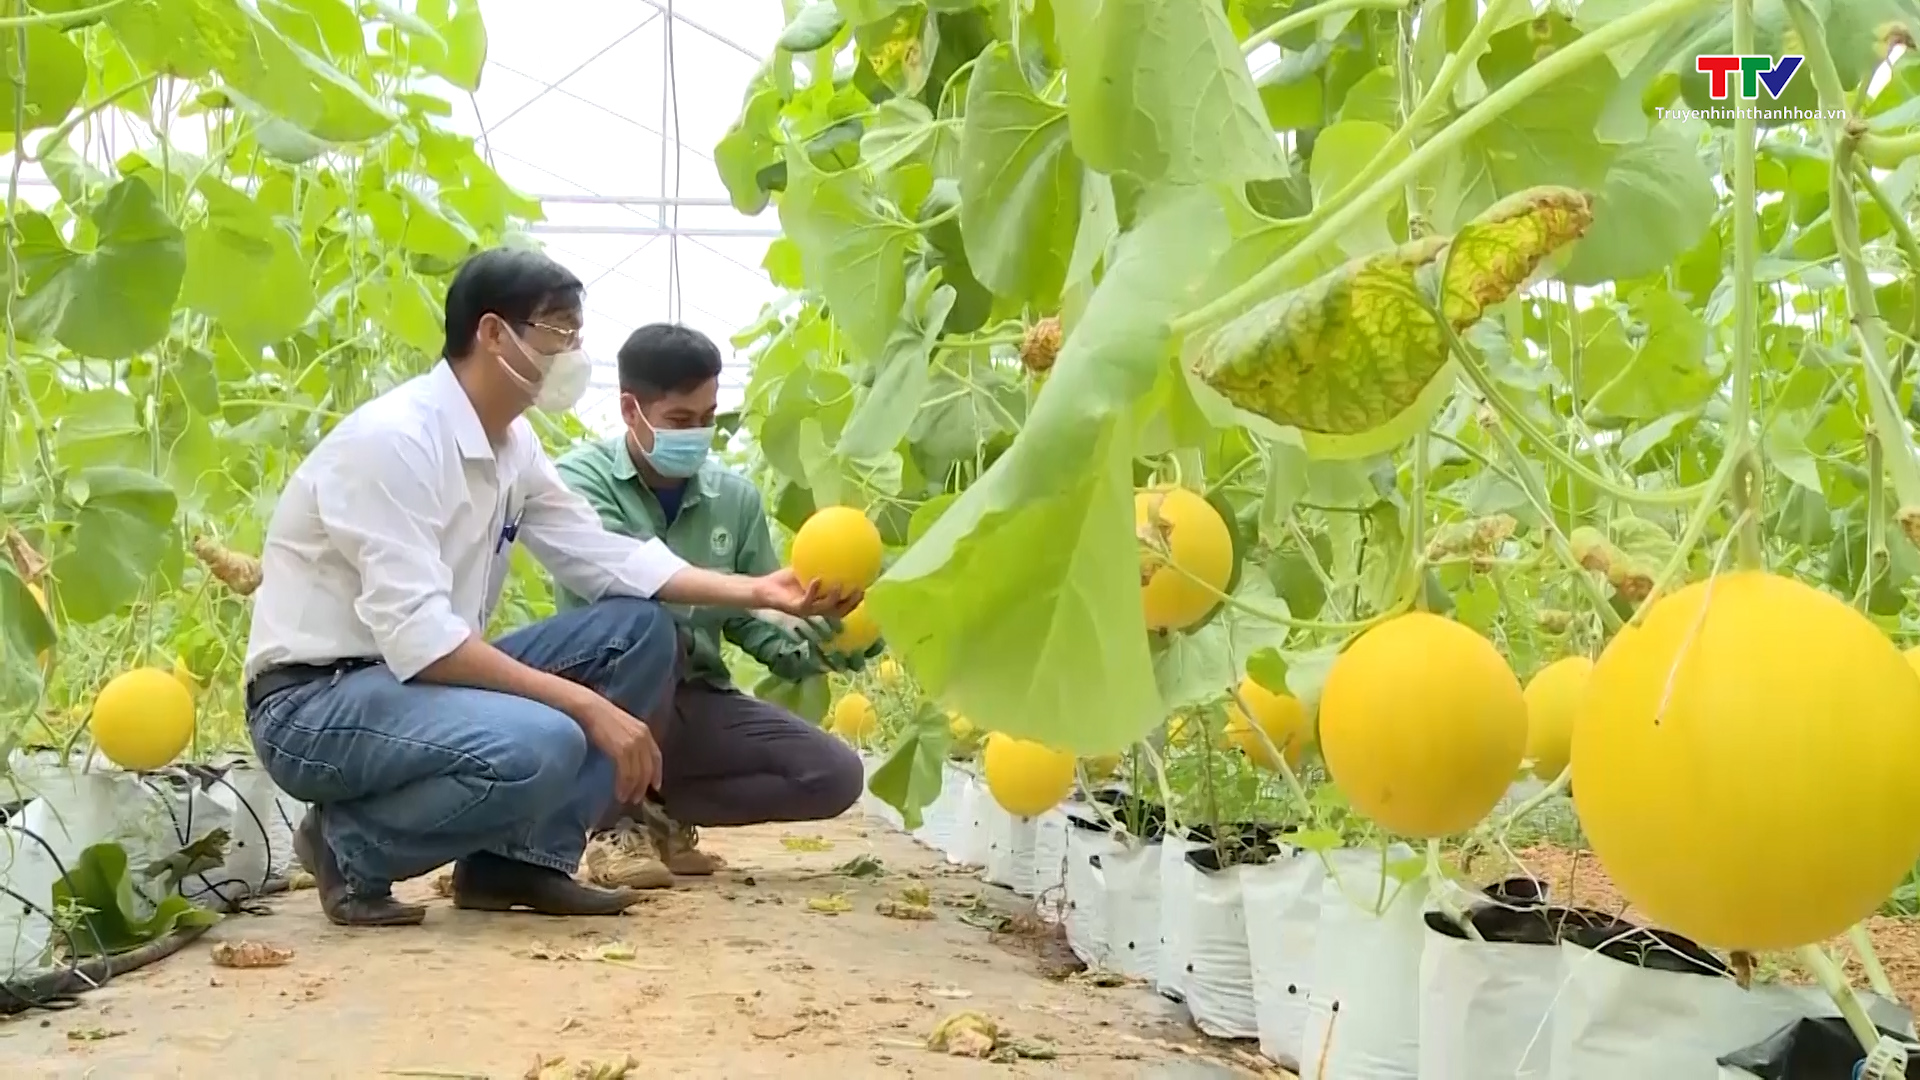 Huyện Vĩnh Lộc phát triển nông nghiệp công nghệ cao - Ảnh 2.